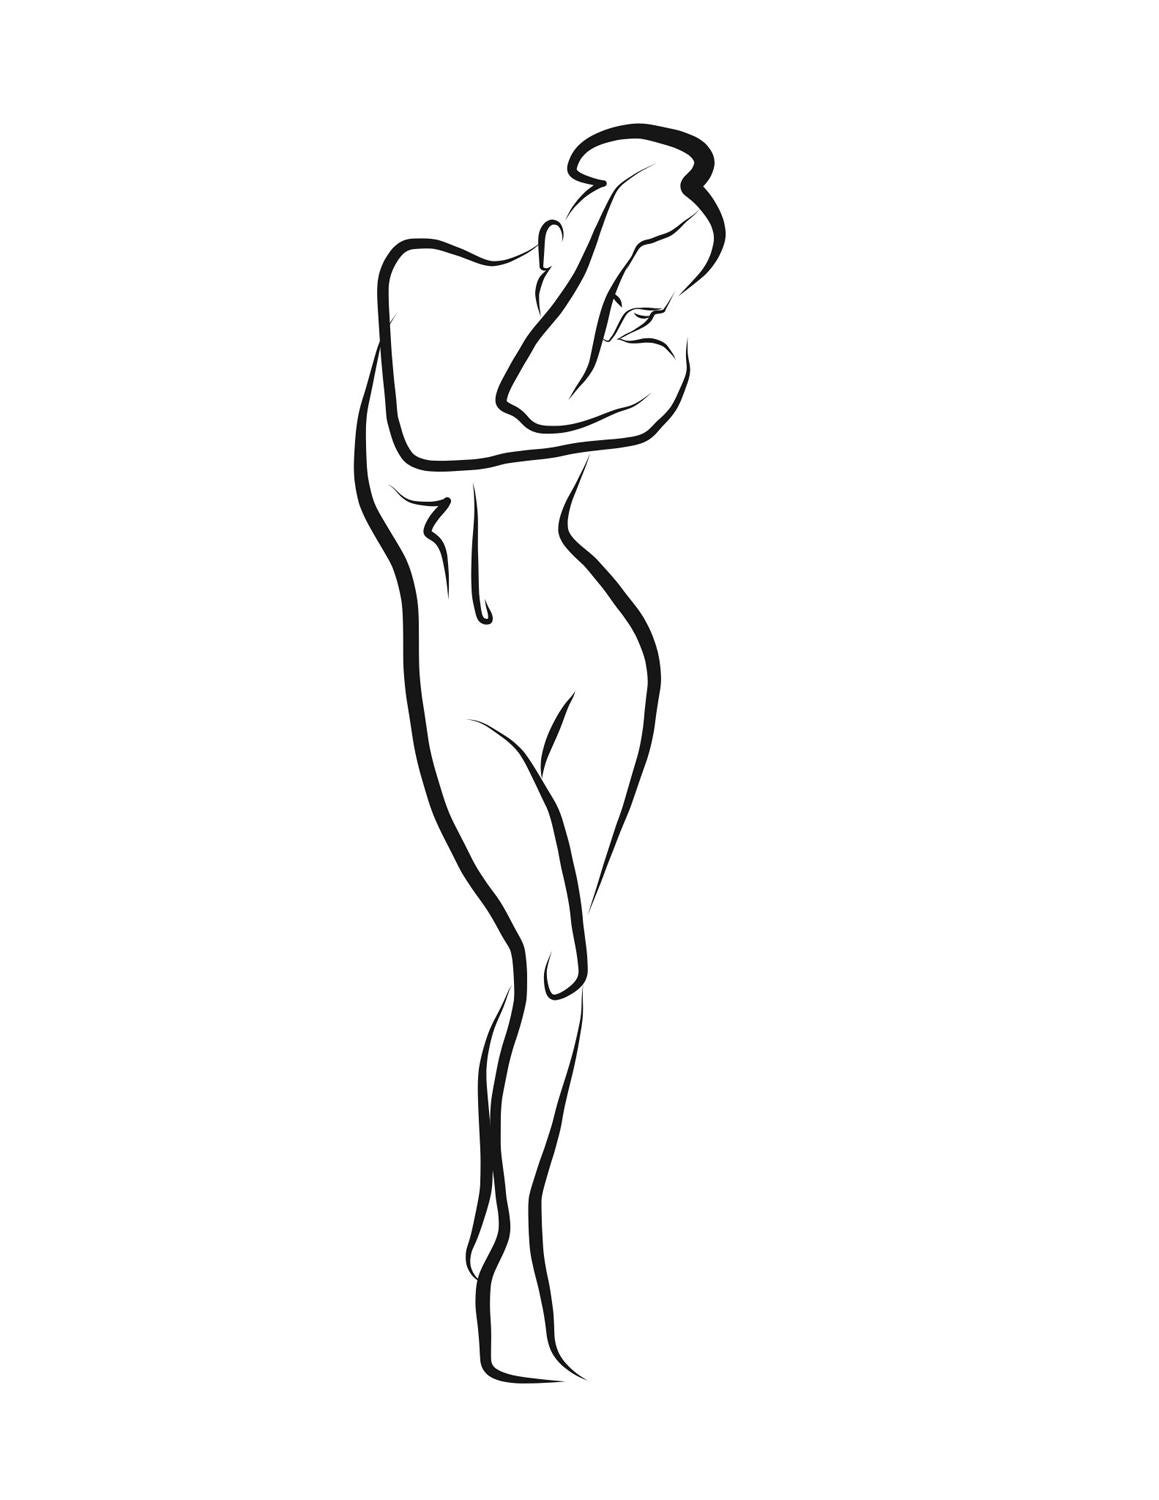 Haiku n°26 - Dessin numérique représentant une femme nue debout sur un cylindre